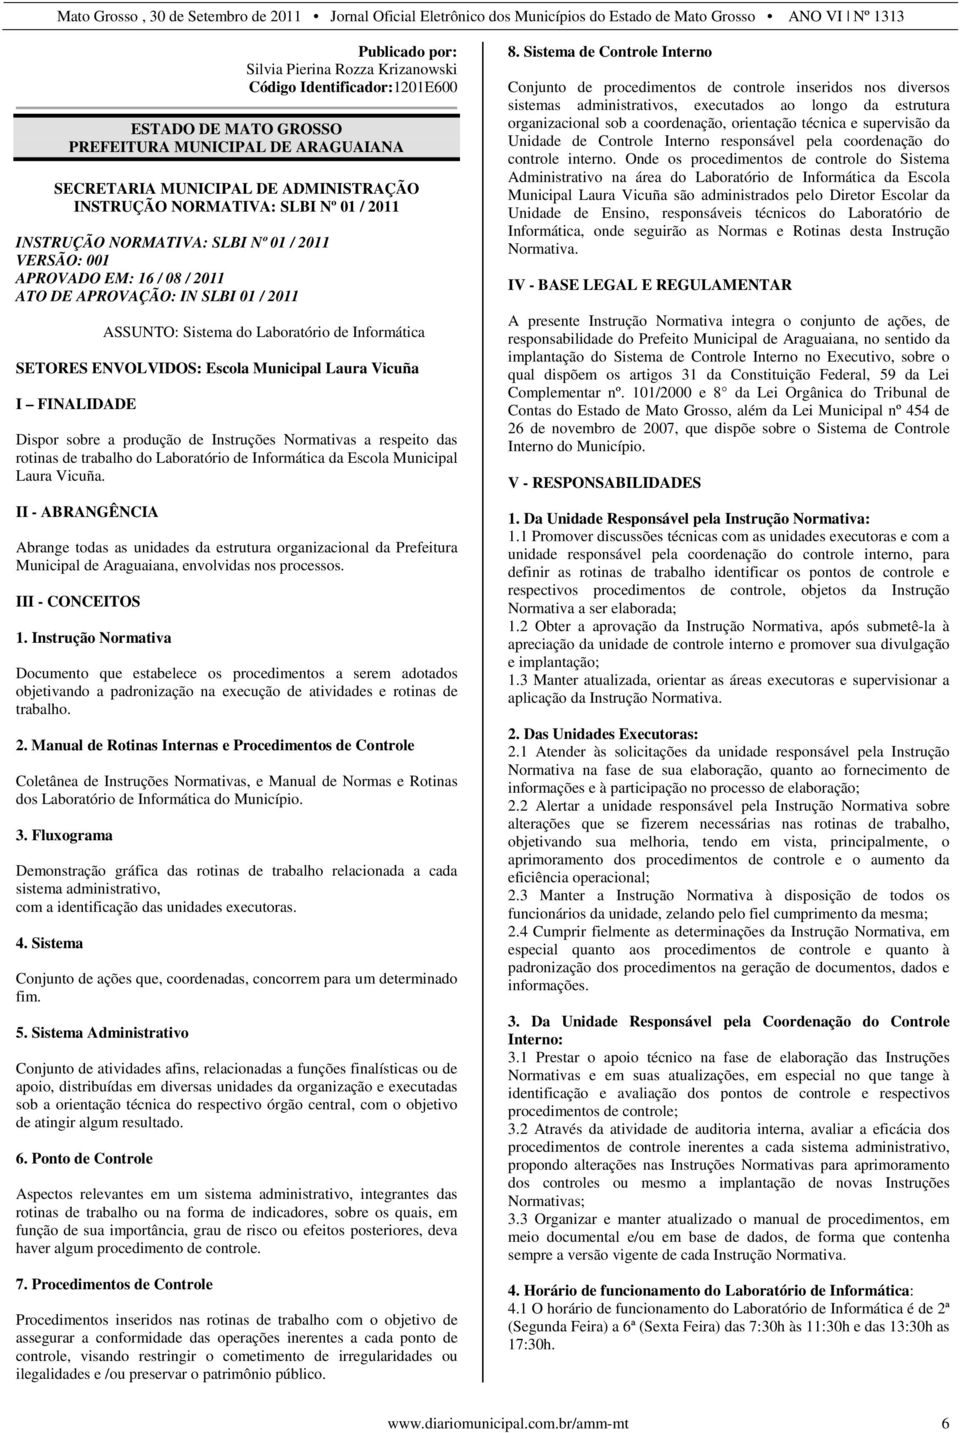 Instruções Normativas a respeito das rotinas de trabalho do Laboratório de Informática da Escola Municipal Laura Vicuña.